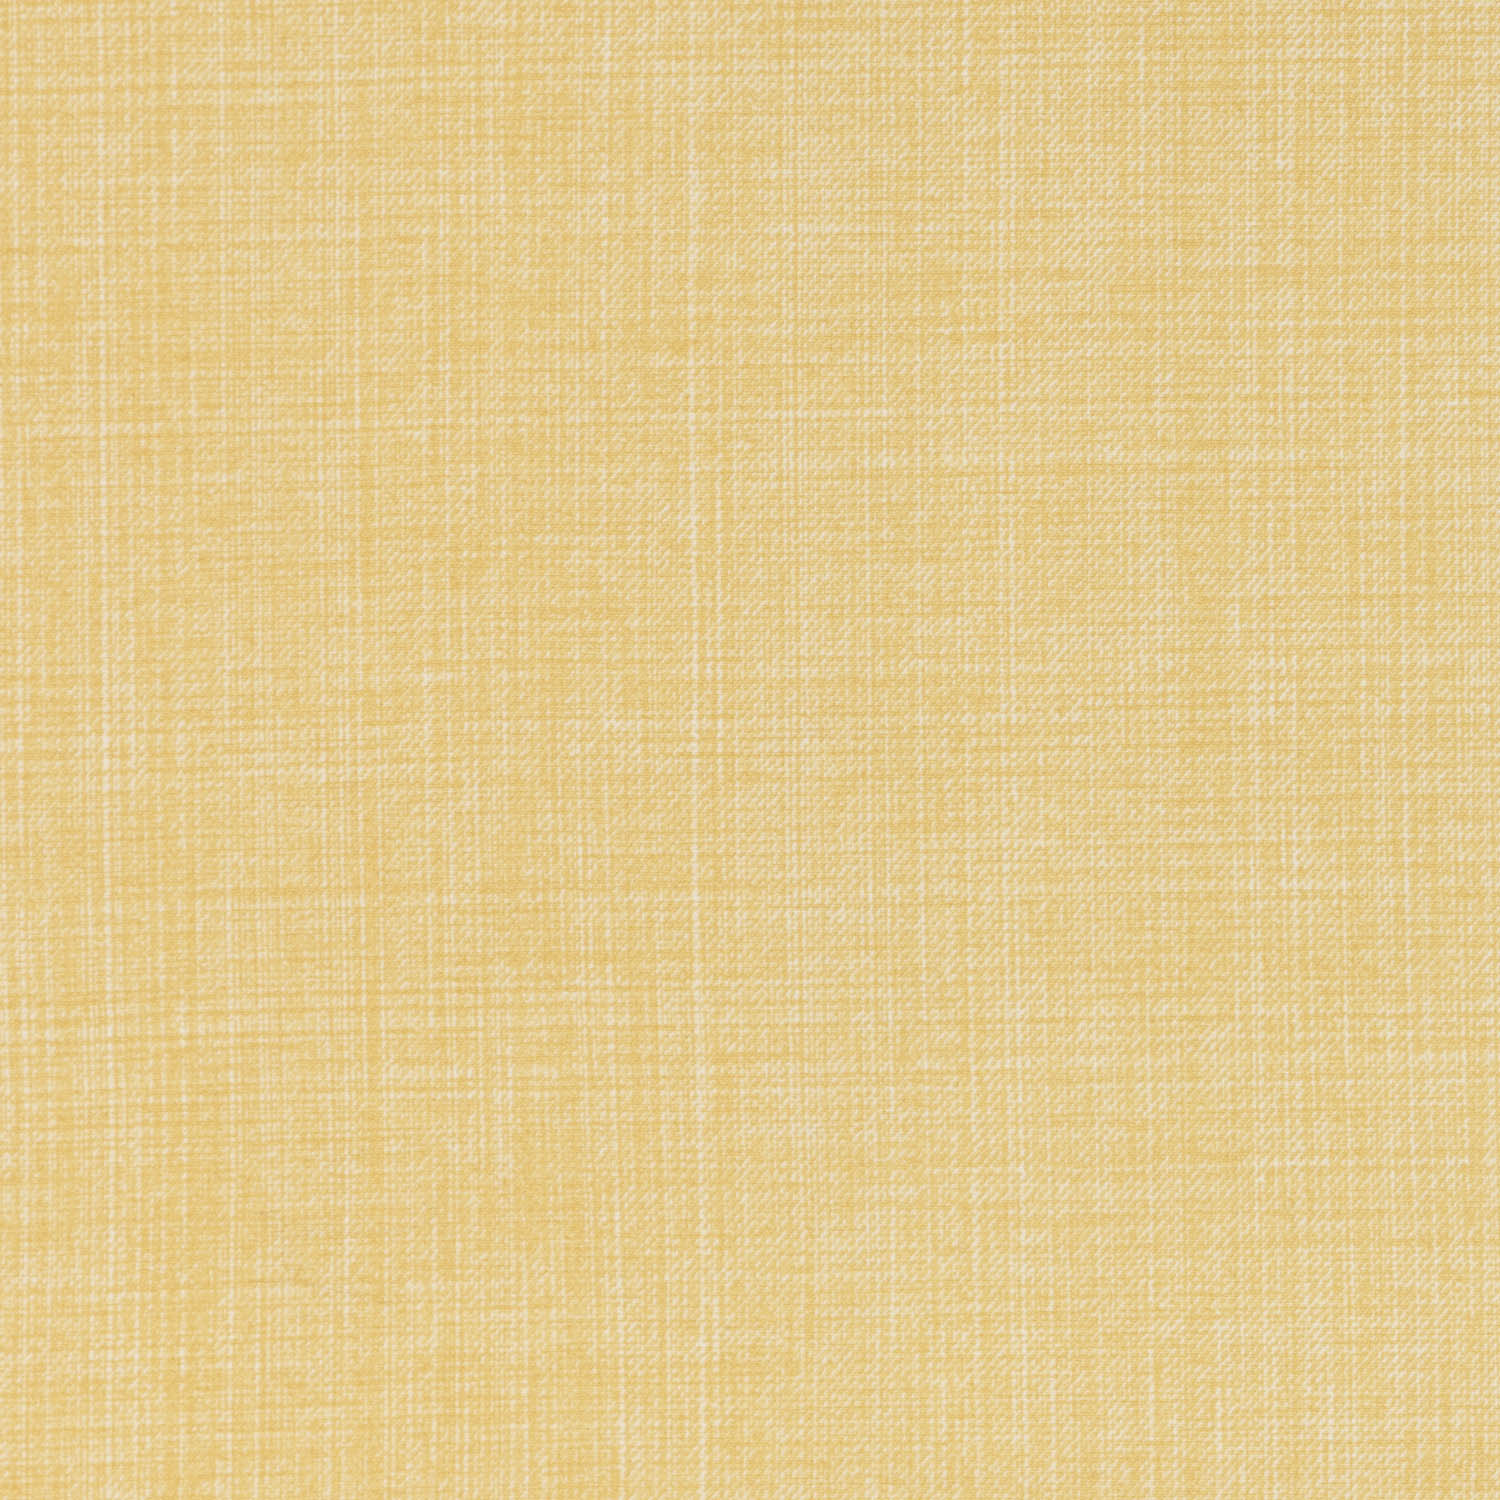 l-188-yellow-fermoie-plain-cotton-1.jpg